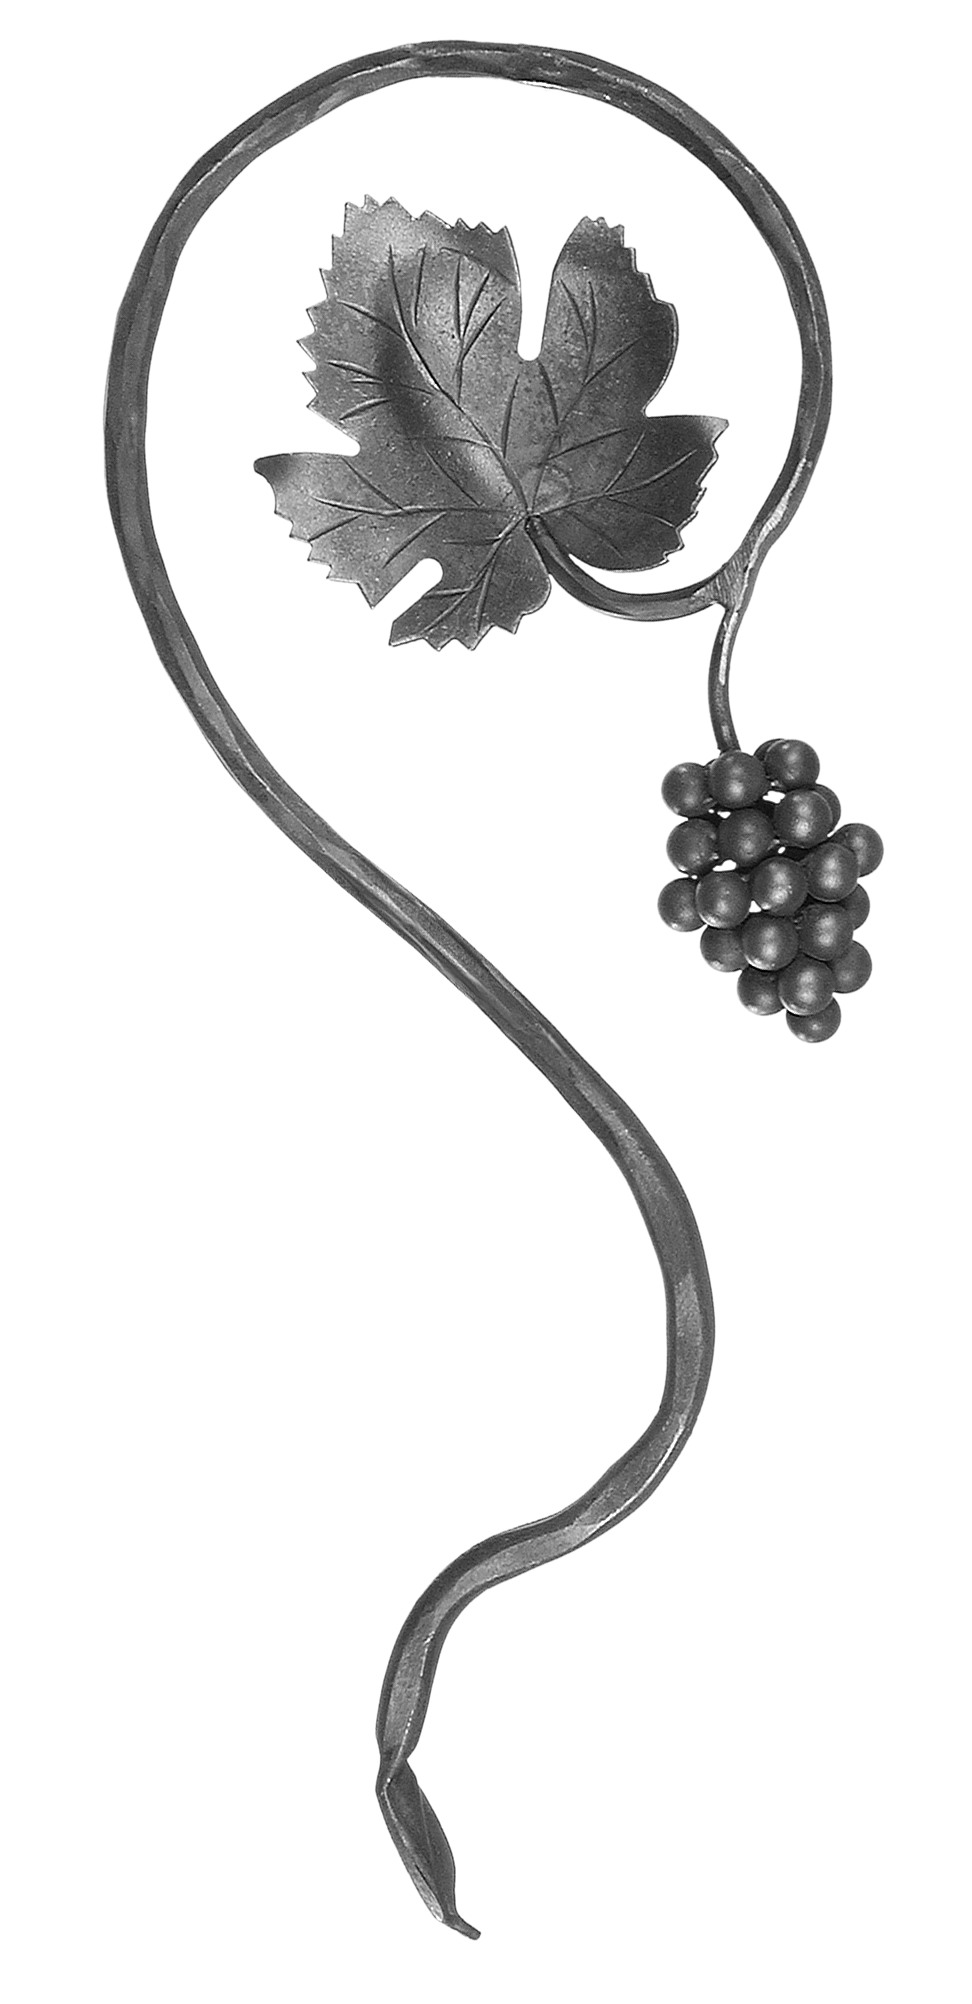 Décor de style raisin avec une grappe de raisin et une feuille de vigne d'une hauteur de 555mm et d'une largeur de 215mm. En fer forgé.